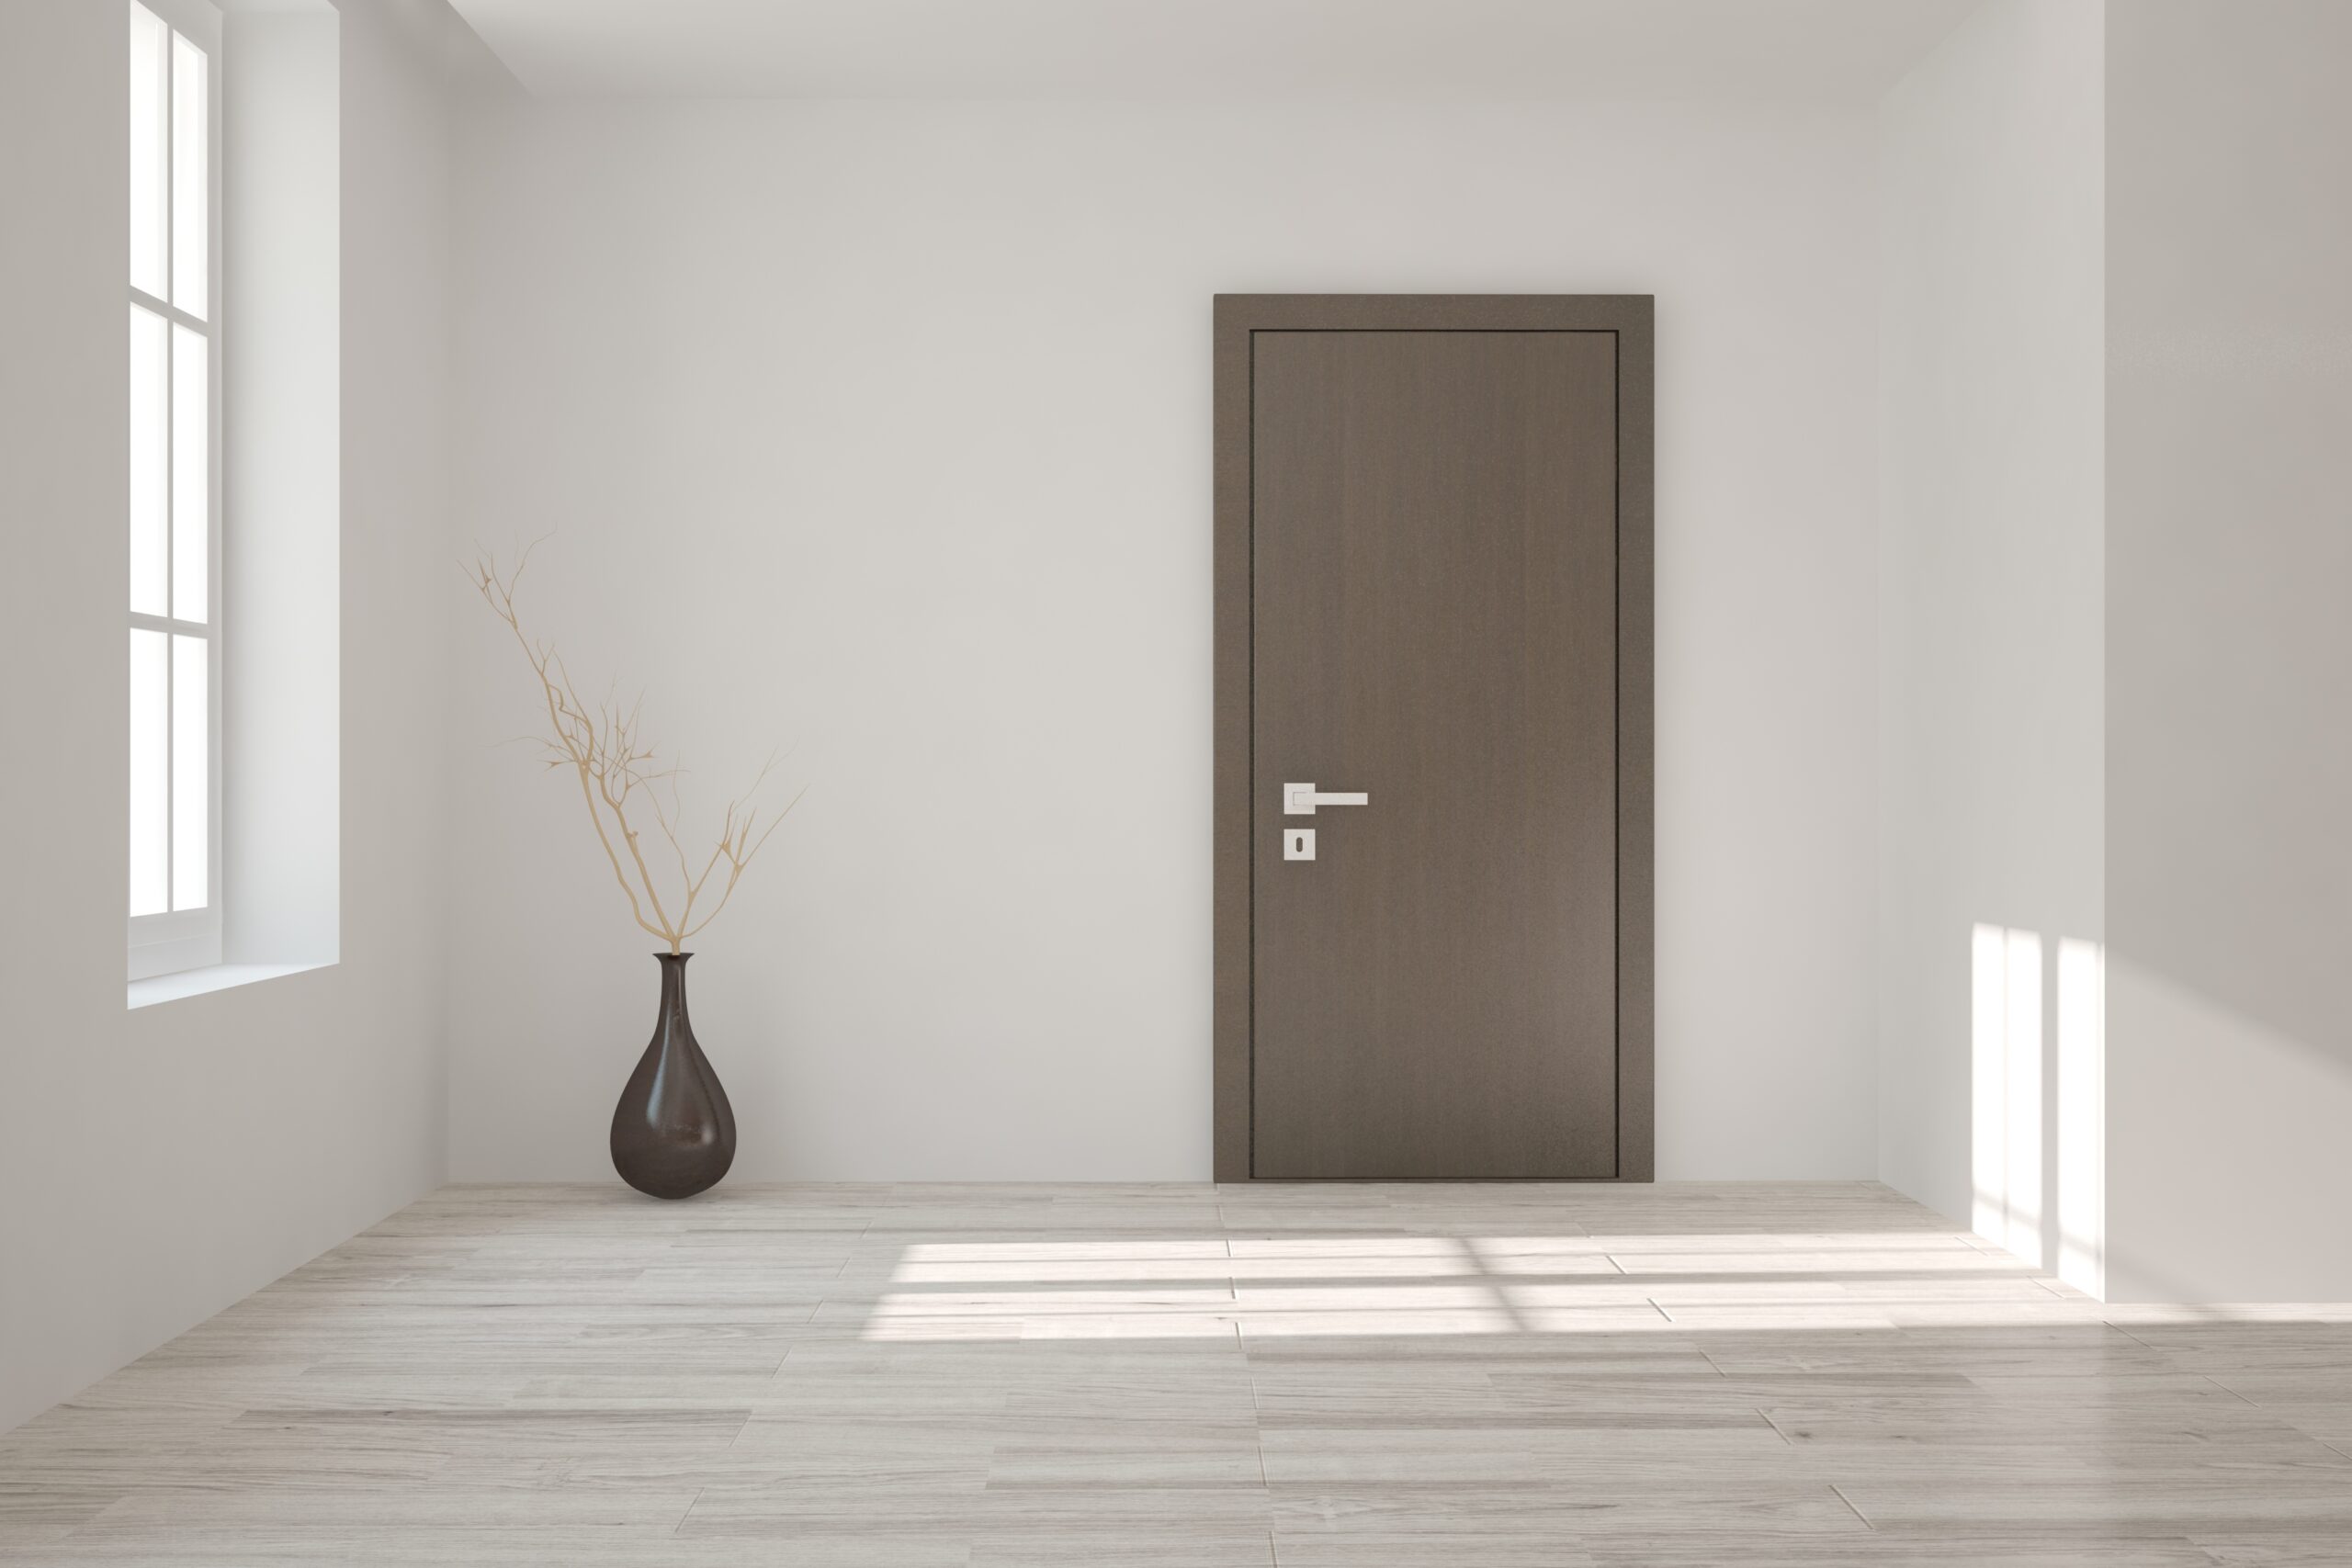 White empty room with door. Scandinavian interior design. 3D illustration